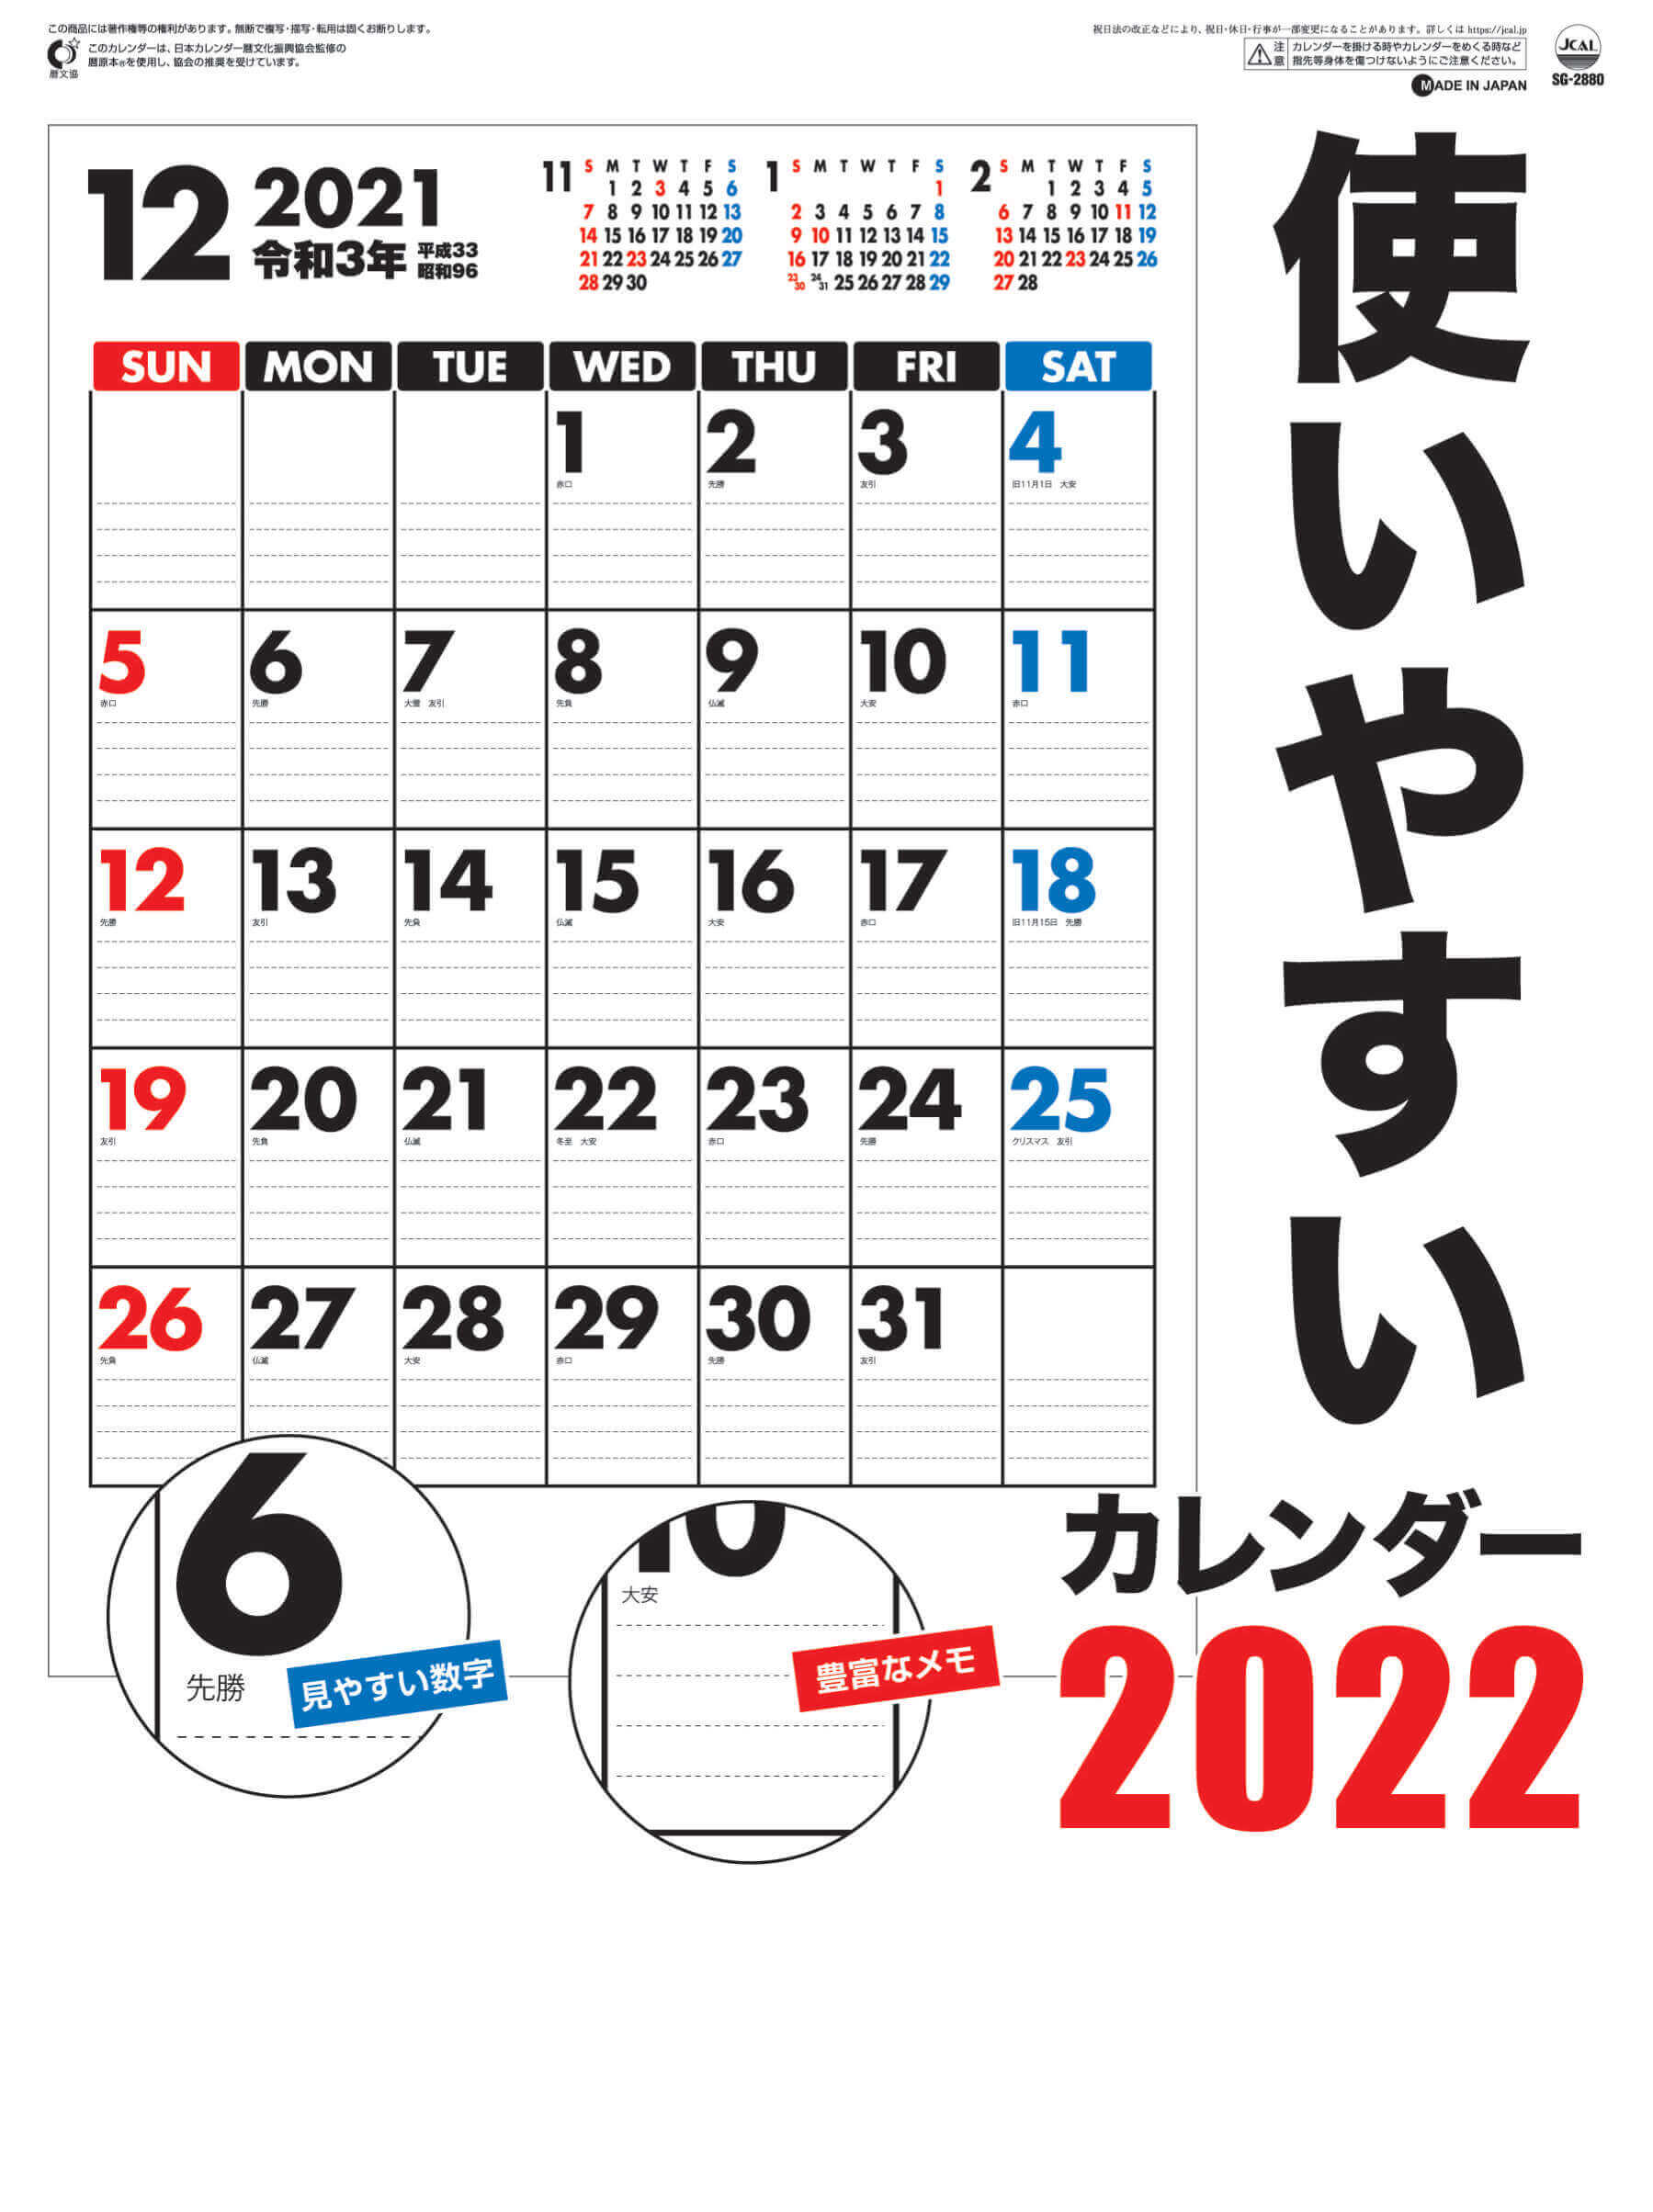  使いやすいカレンダー 2022年カレンダーの画像